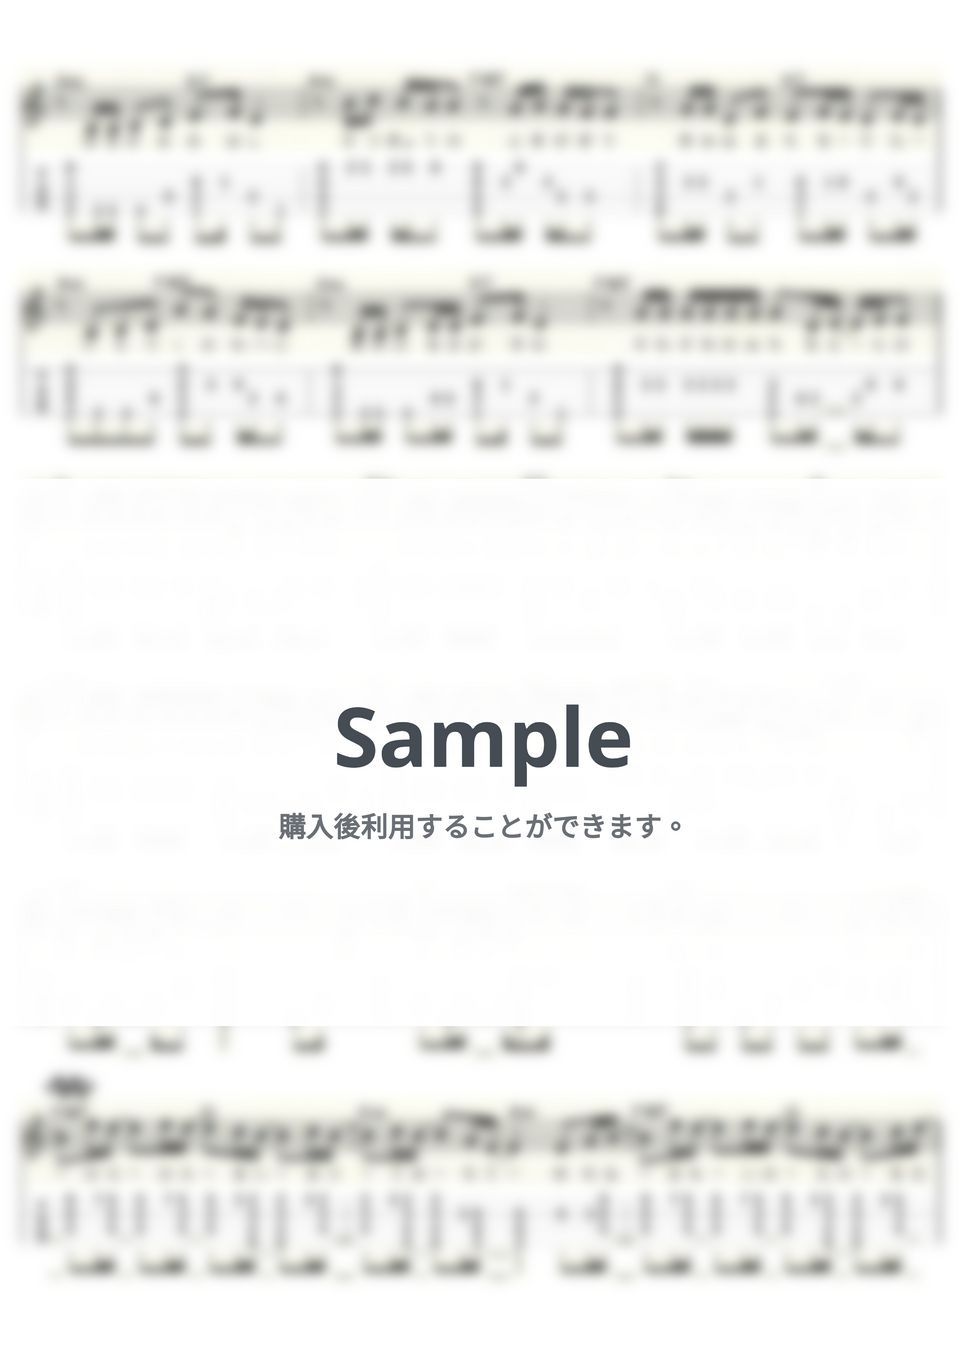 いきものがかり - SAKURA (ｳｸﾚﾚｿﾛ / Low-G / 中級～上級) by ukulelepapa